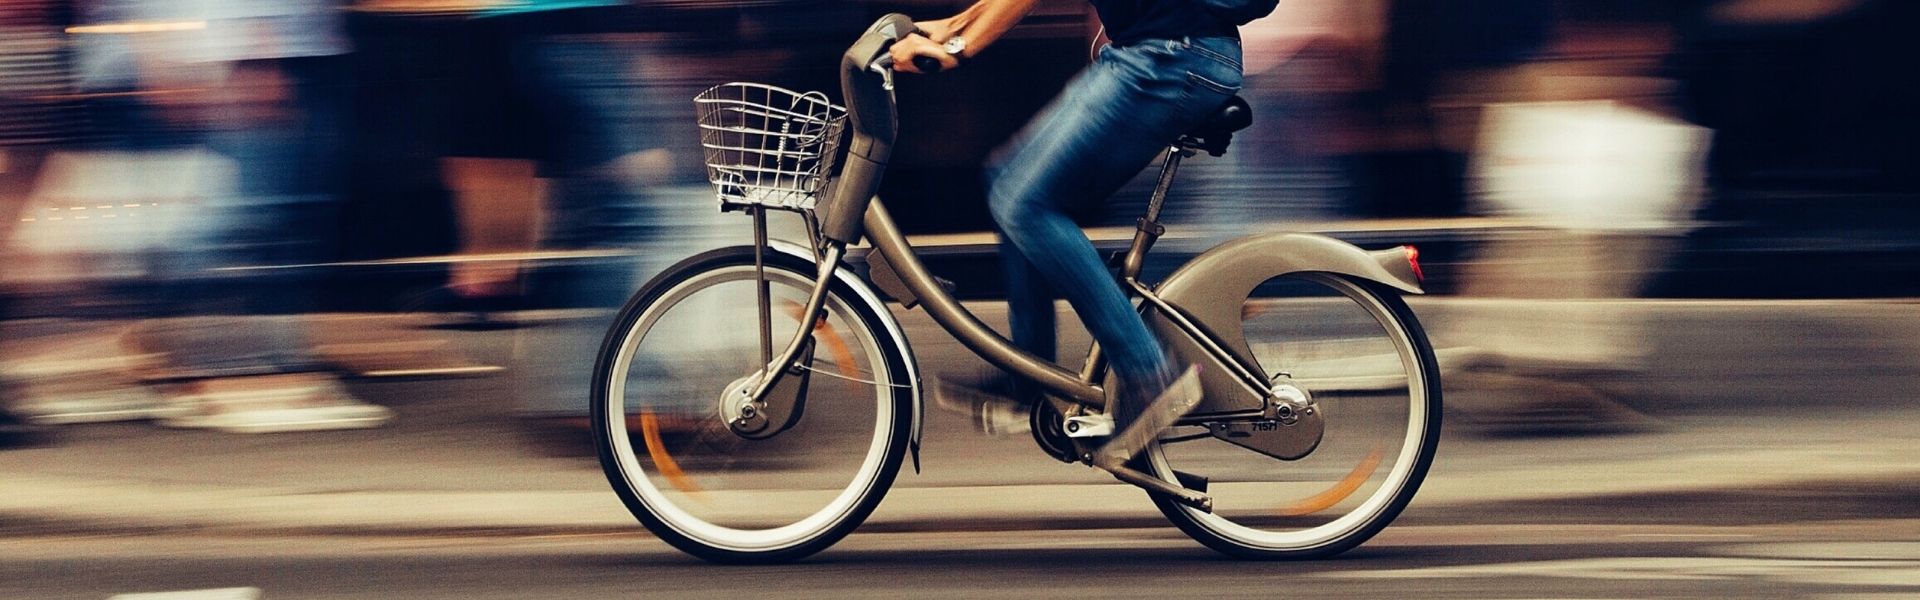 Mann fährt Fahrrad auf einer Straße in der Stadt